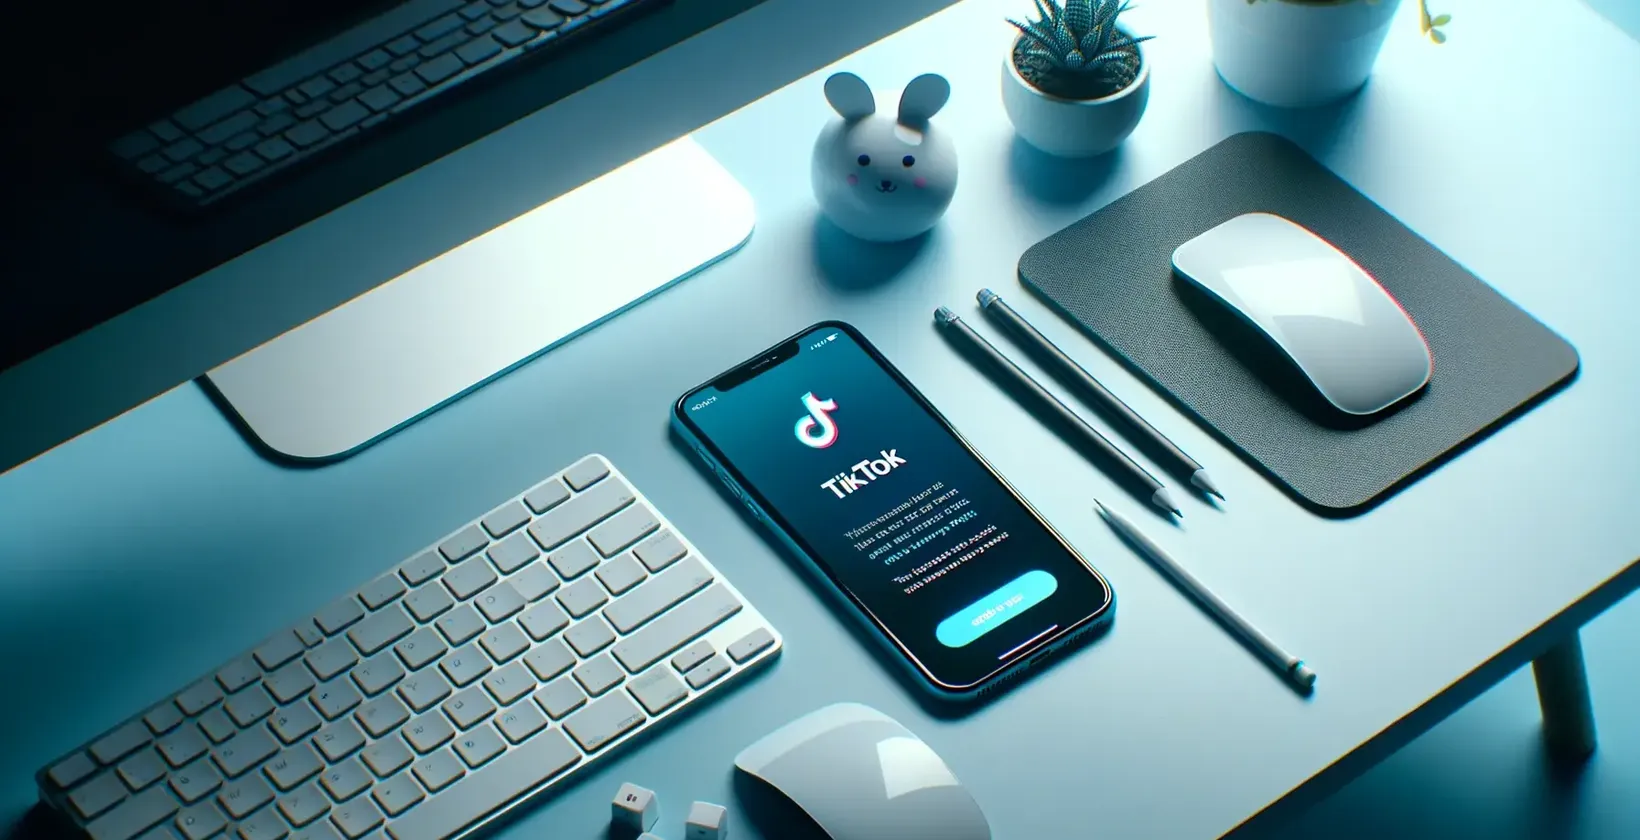 Smartphone avec l'application TikTok ouverte, entouré d'un clavier, d'une souris et d'éléments de bureau sur une table éclairée en bleu.